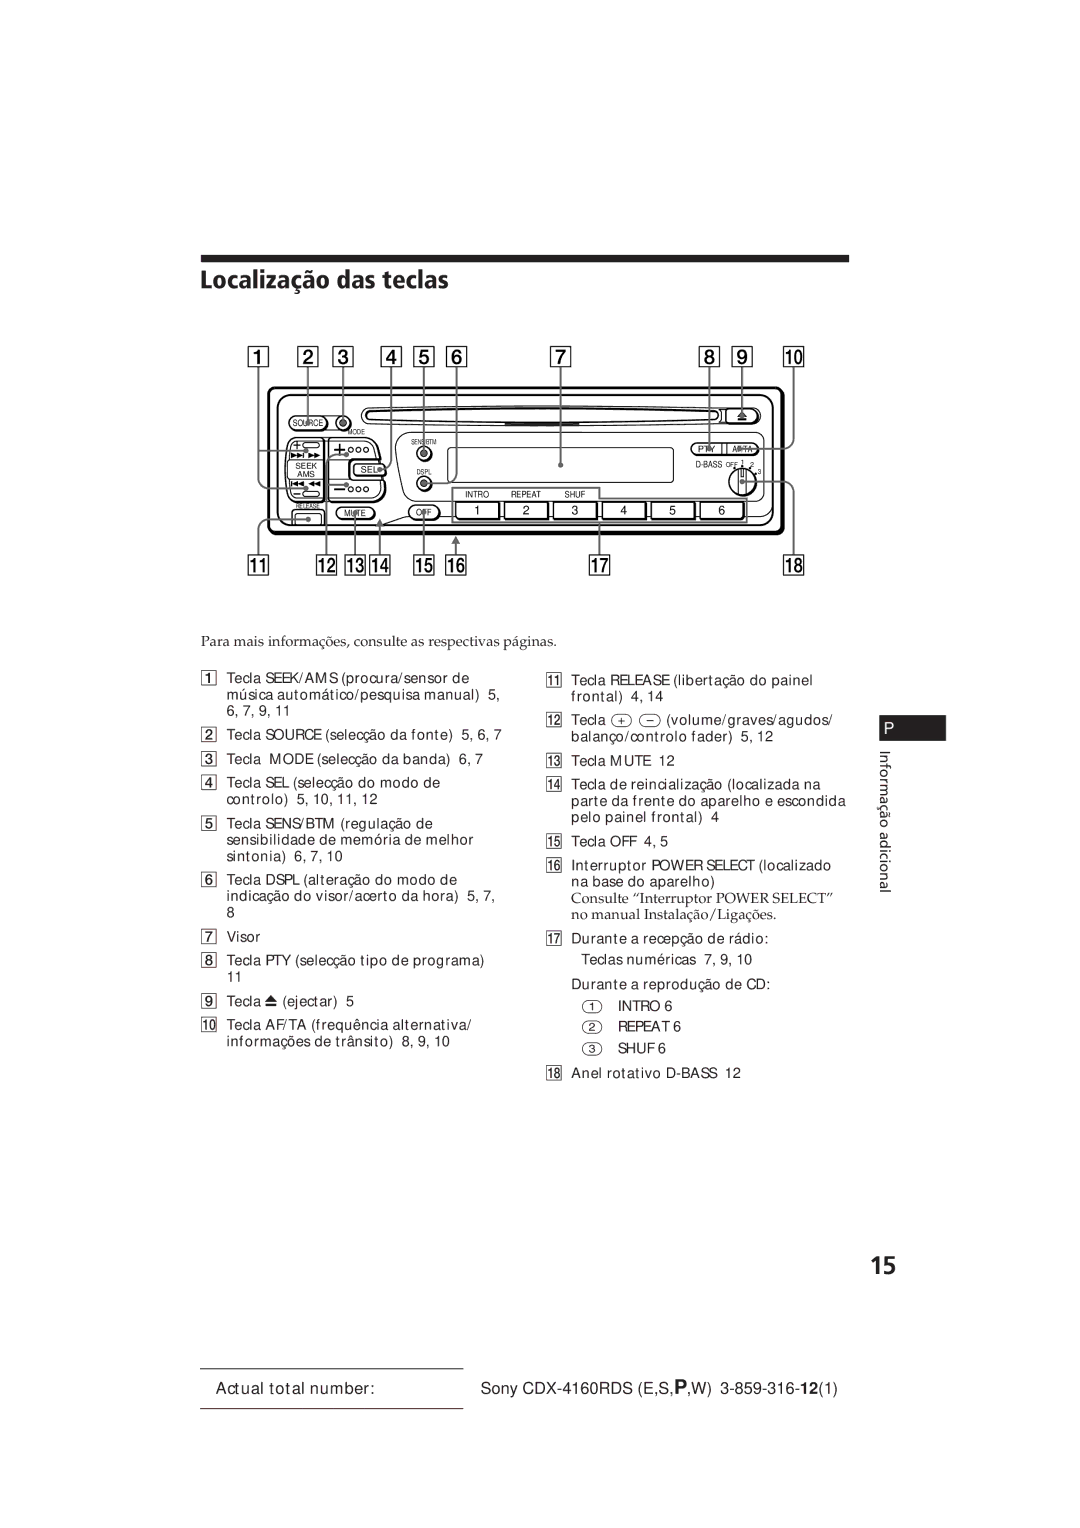 Sony CDX-4160RDS manual Localização das teclas, Para mais informações, consulte as respectivas páginas 